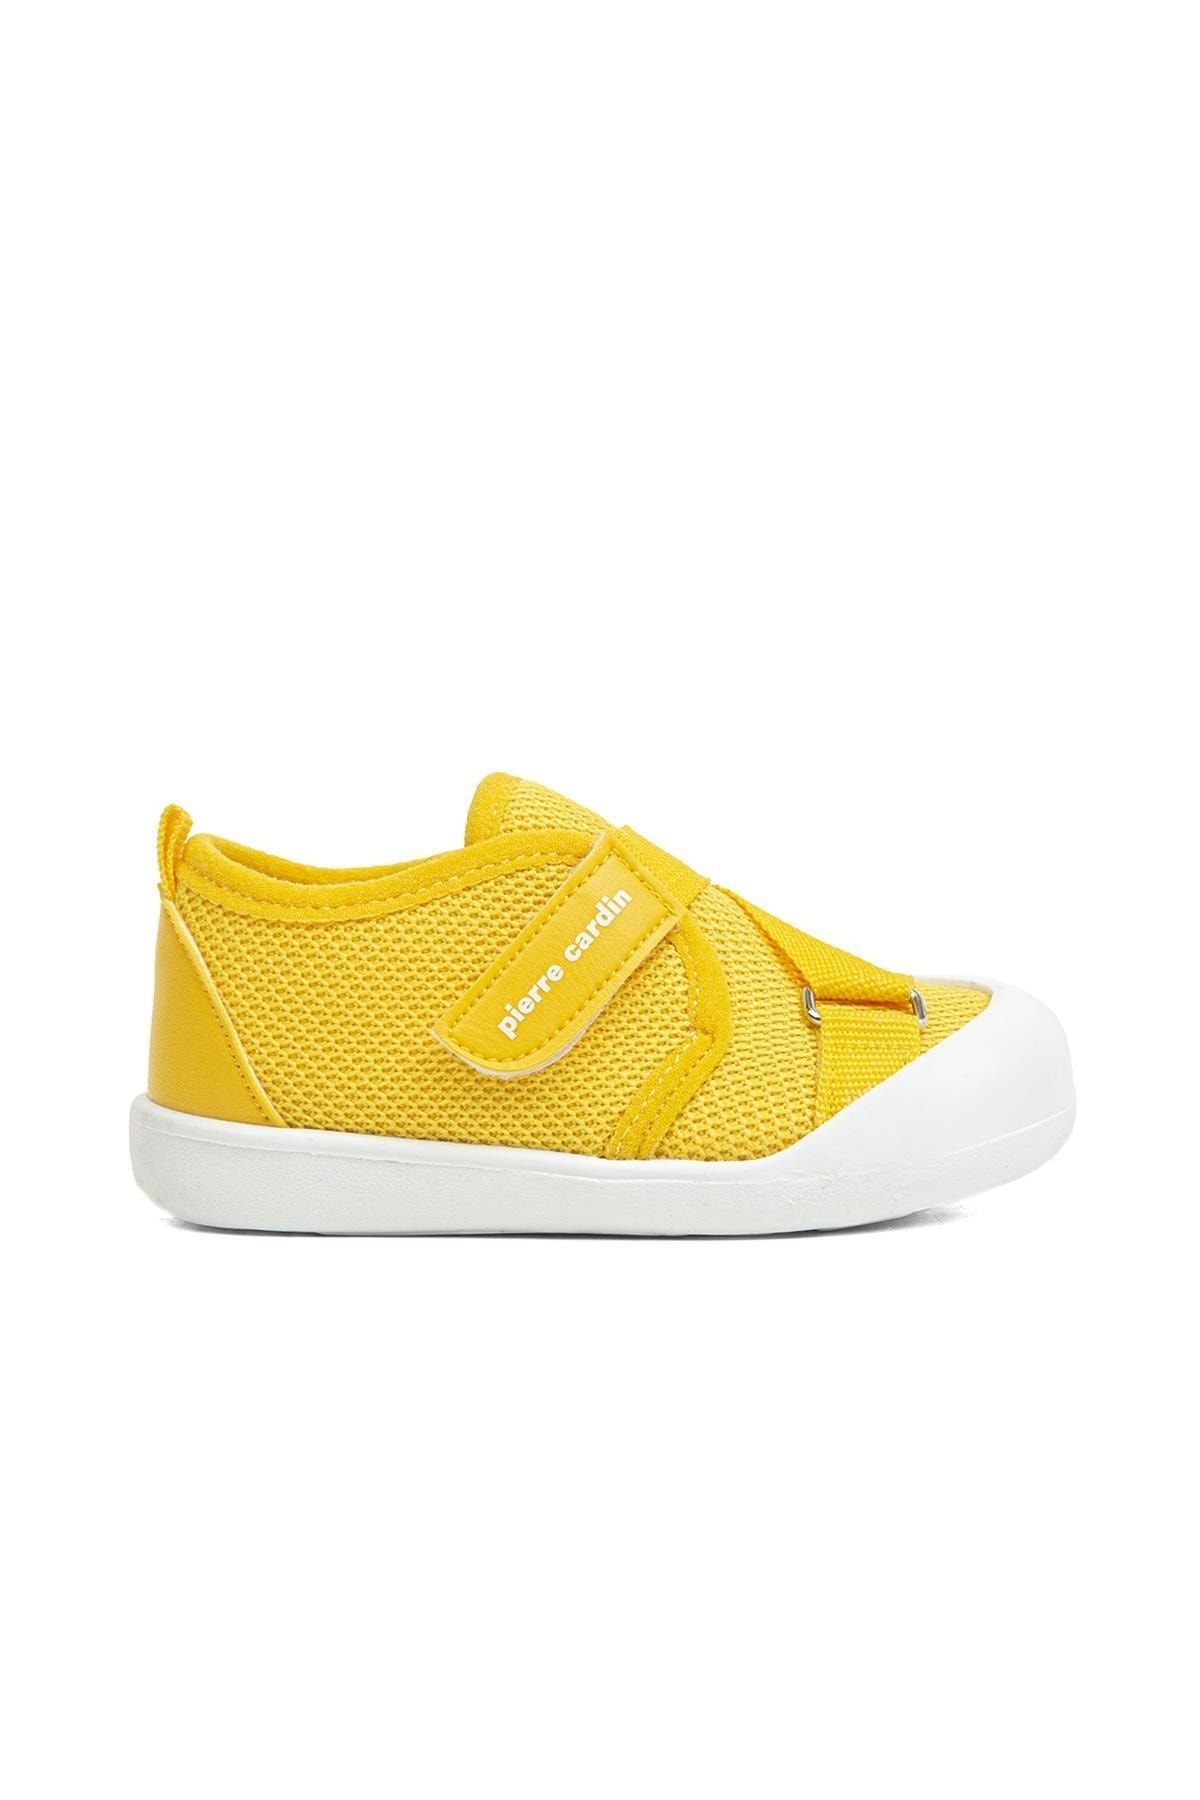 Pierre Cardin ® | Pc-3385-3610 Sarı - Çocuk Spor Ayakkabı